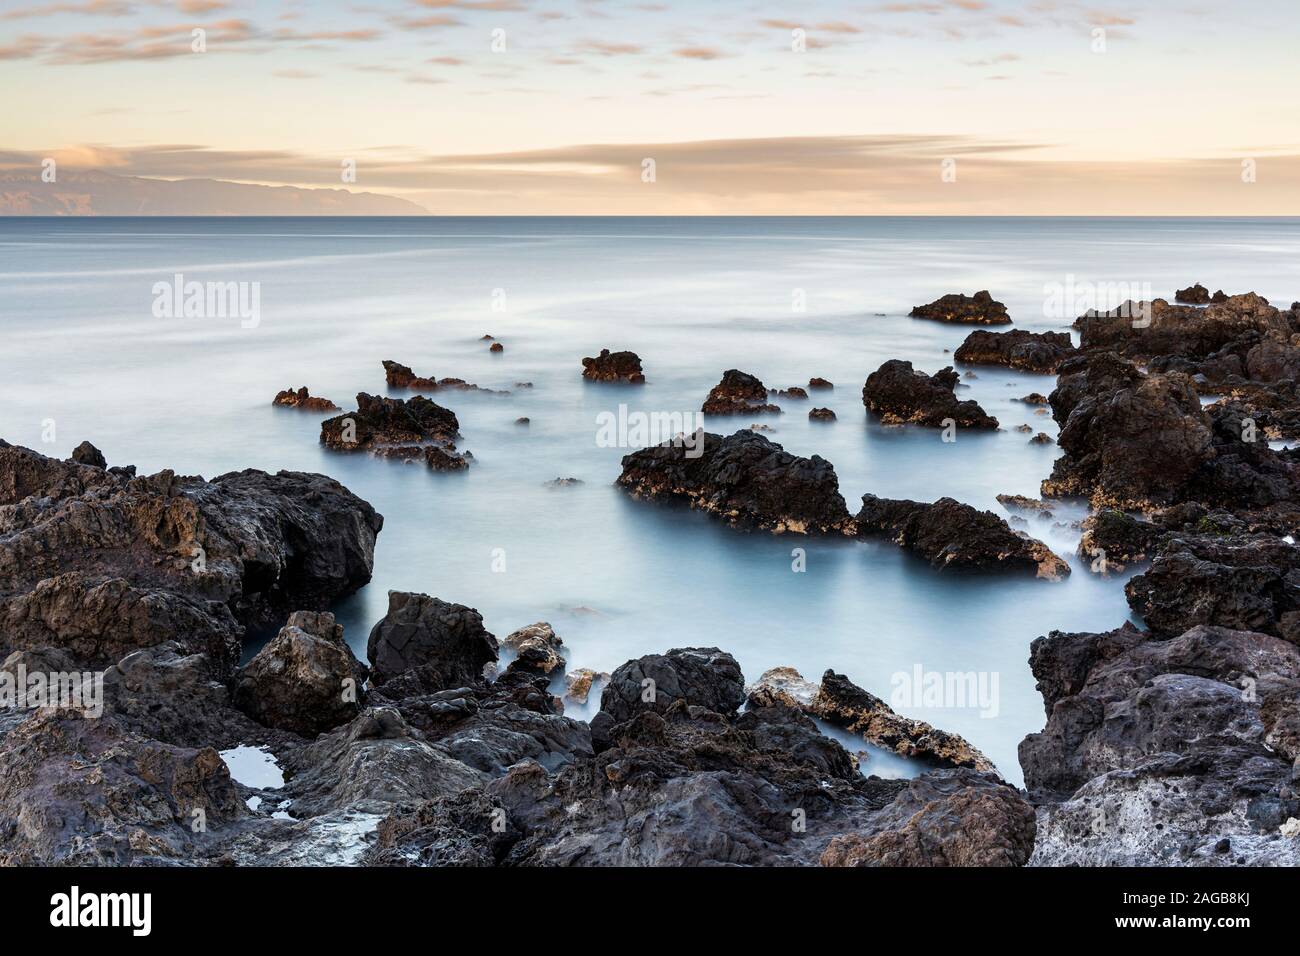 Una lunga esposizione paesaggi marini lungo la costa rocciosa a Fonsalia sulla costa occidentale di Tenerife, Isole Canarie, Spagna Foto Stock